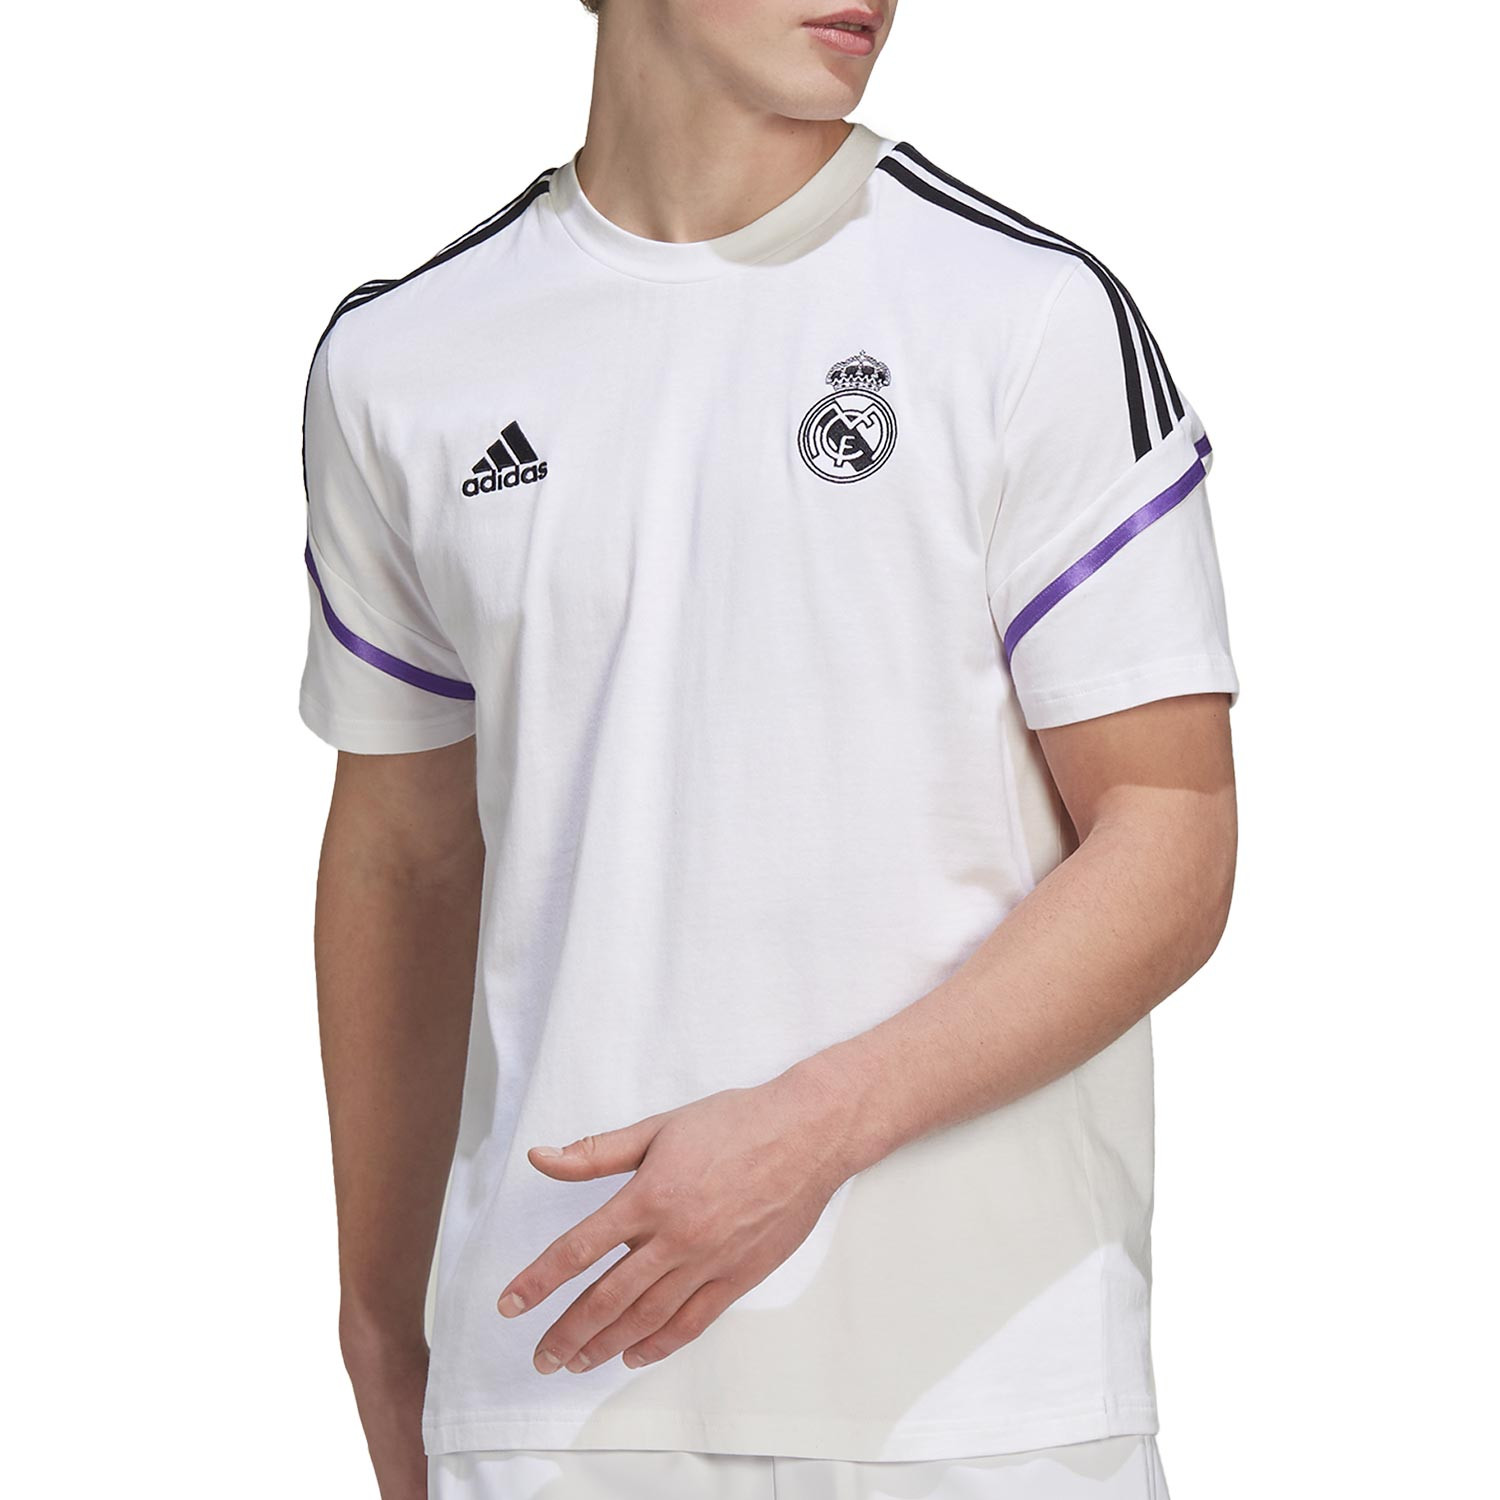 Camiseta algodón adidas Real entrenamiento blanca futbolmania